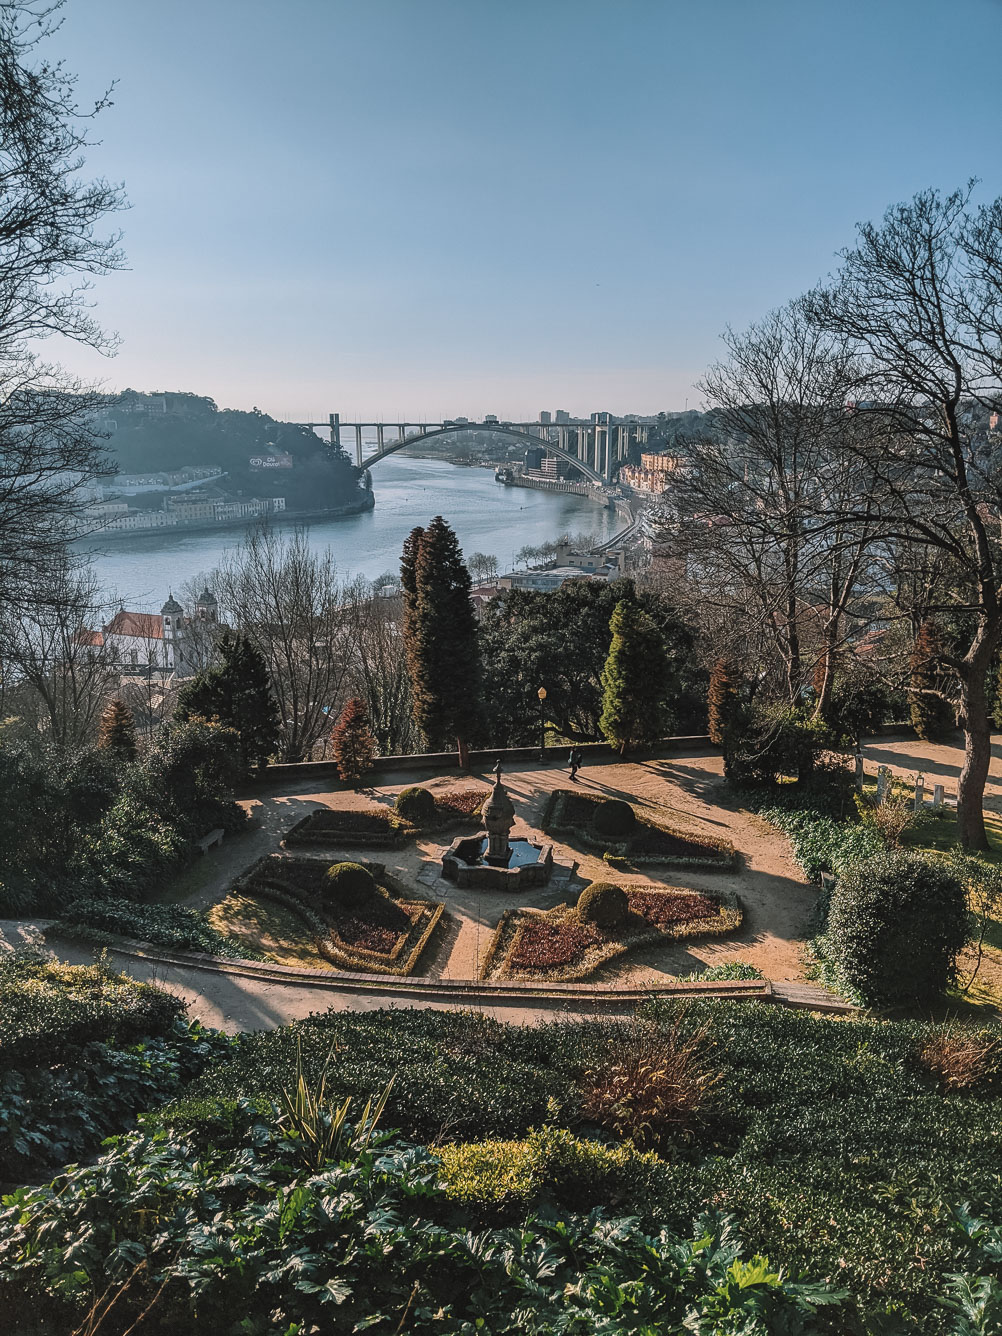 Jardins do Palacio de Cristal, Porto